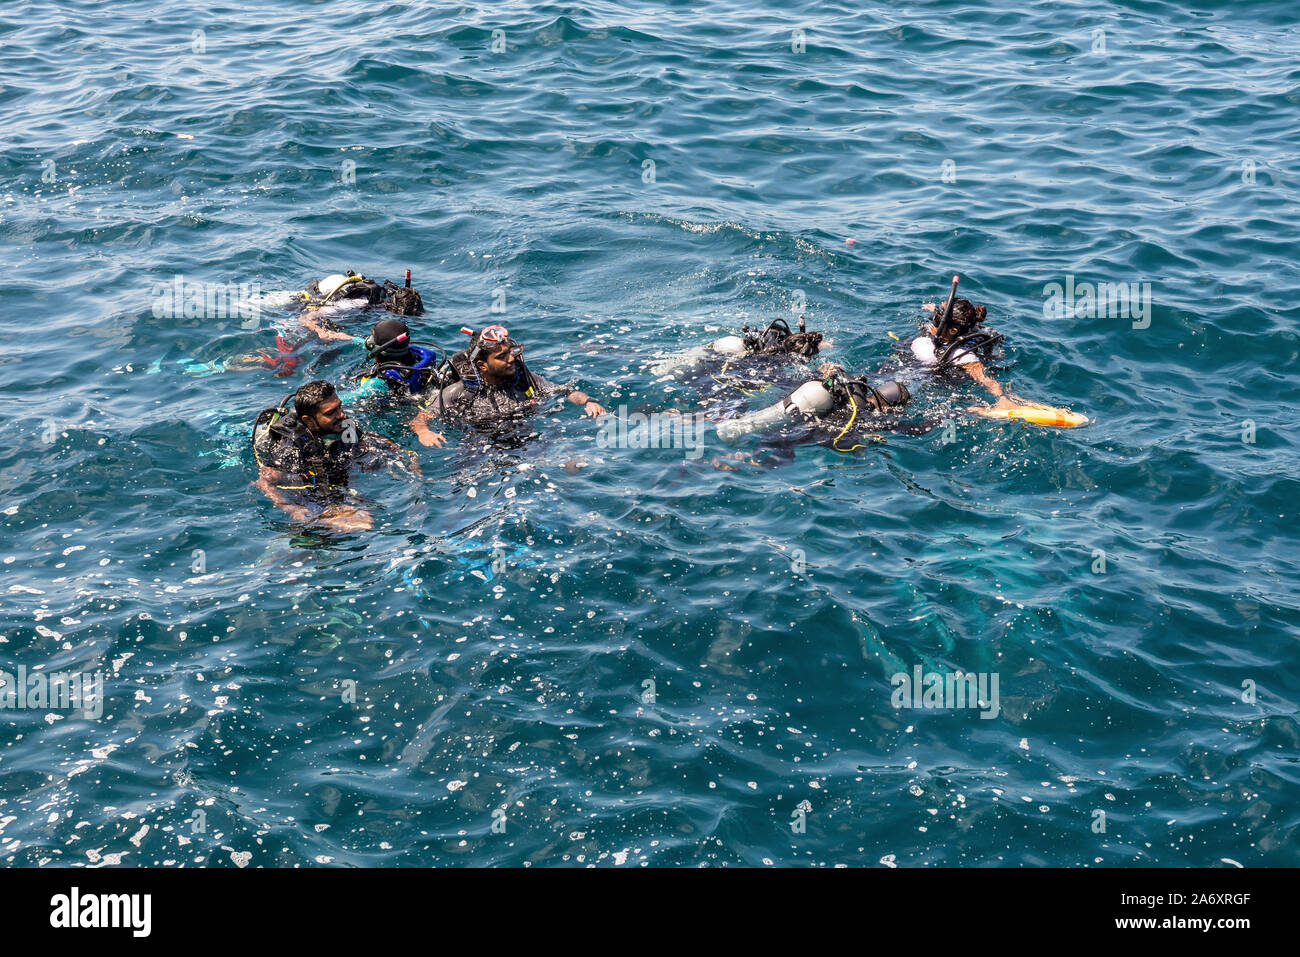 Maschio, Maldive - Novembre 17, 2017: Docente e gli studenti durante lezioni di immersione subacquea nel maschio, Maldive, Oceano Indiano. Foto Stock